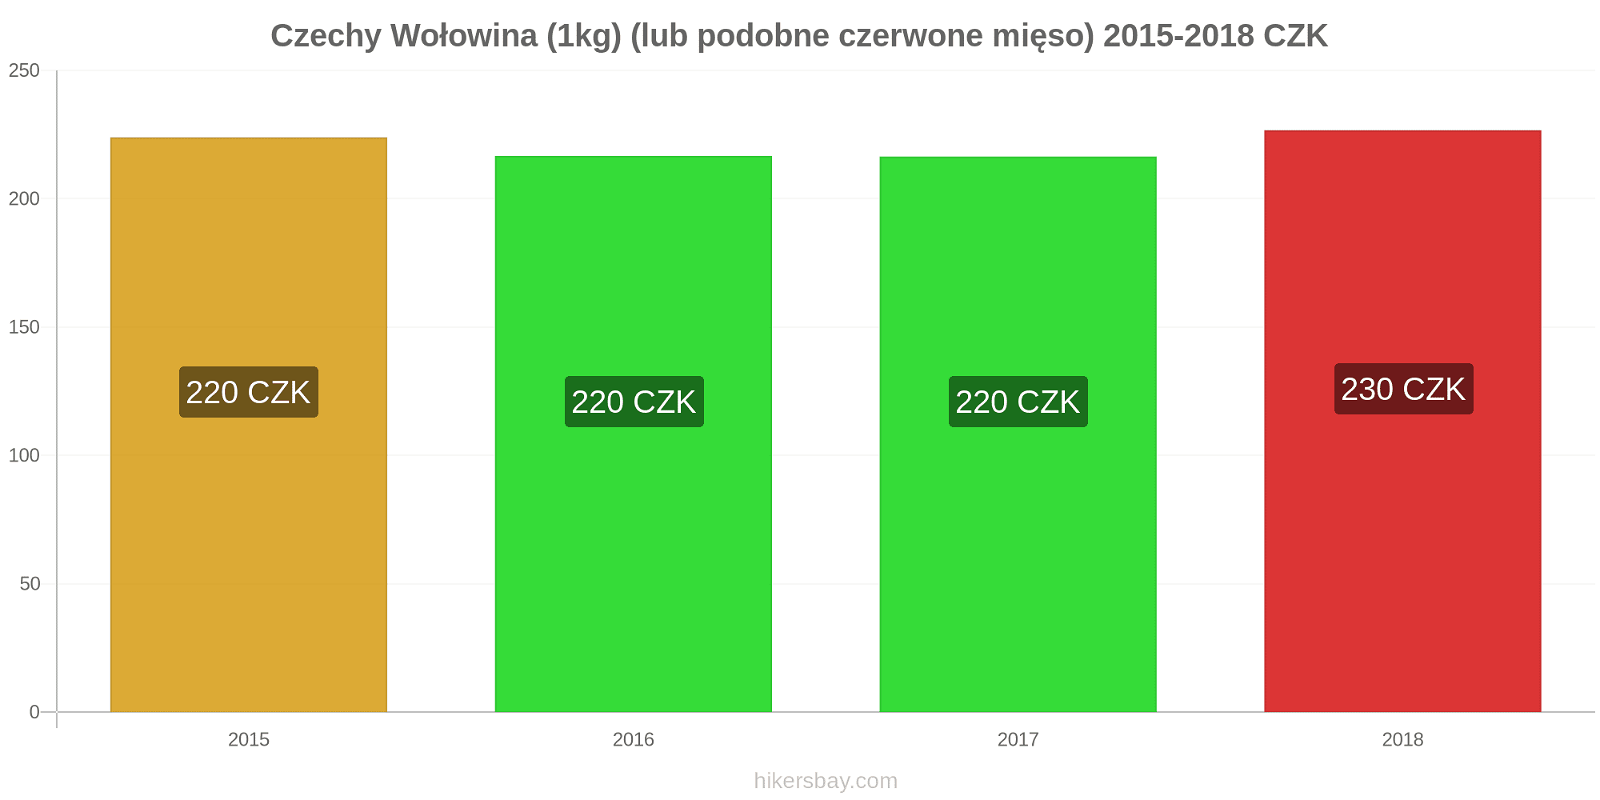 Czechy zmiany cen Wołowina (1kg) (lub podobne czerwone mięso) hikersbay.com